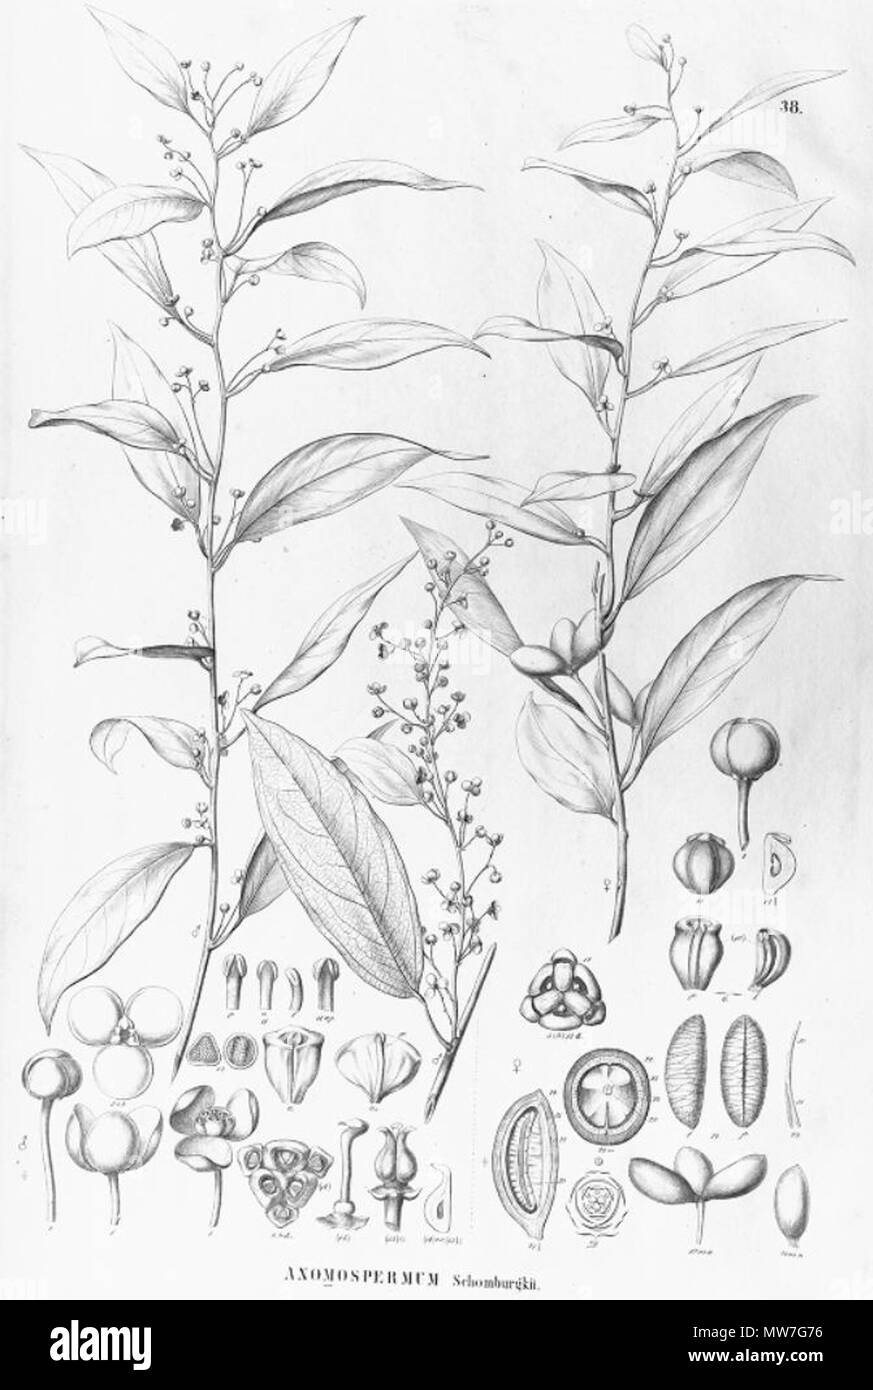 . Illustration of Anomospermum schomburgkii (= Orthomene schomburgkii) . between 1841 and 1872. Carl Friedrich Philipp von Martius (1794-1868), August Wilhelm Eichler (1839-1887) 48 Anomospermum schomburgkii Stock Photo